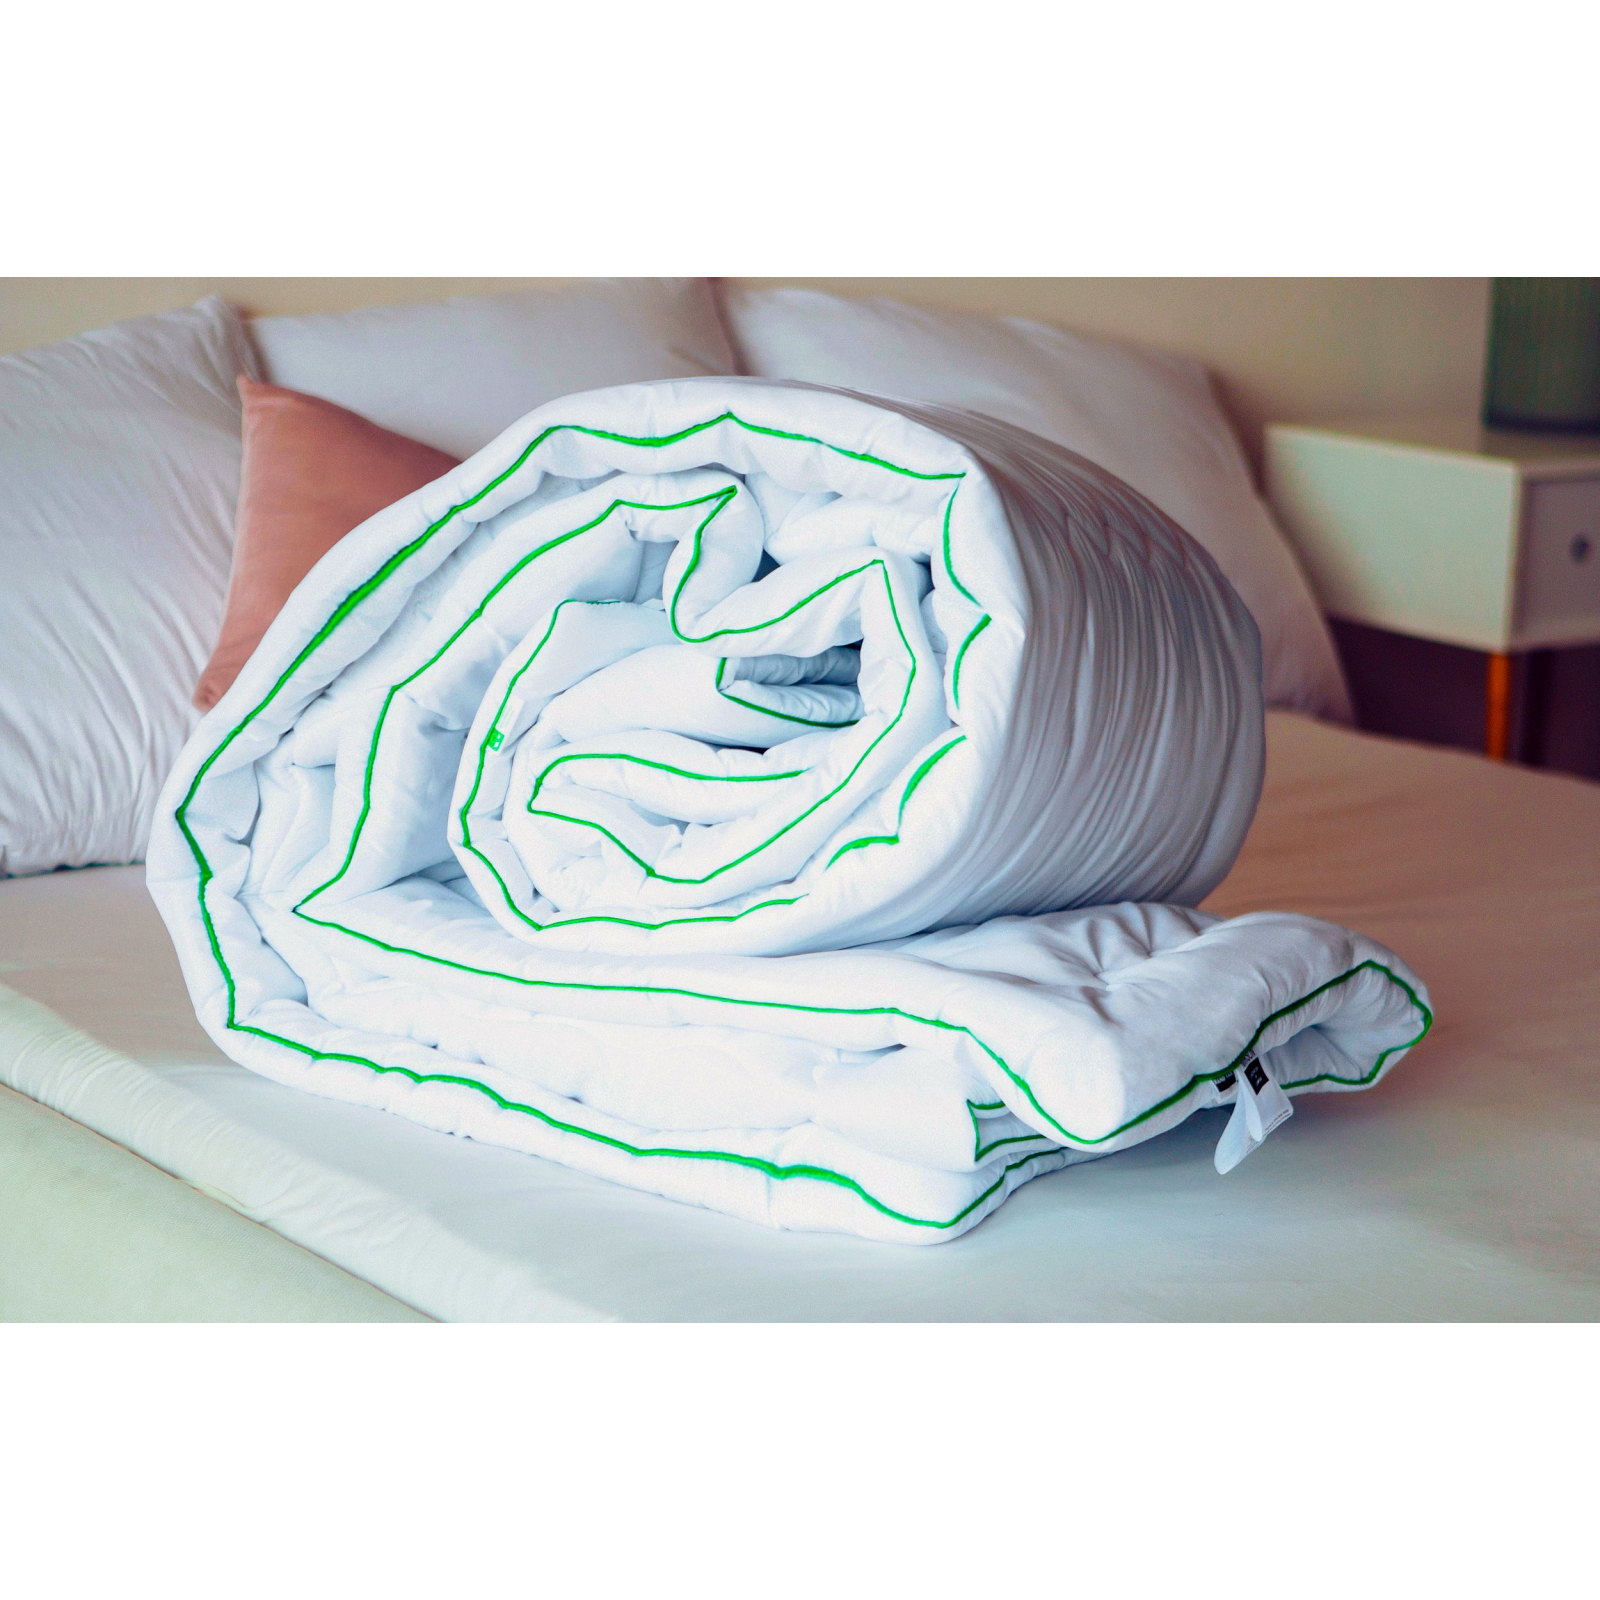 Одеяло MirSon антиаллергенное Eco Eco-Soft Hand Made 812 Деми 220x240 см (2200000621948) изображение 7